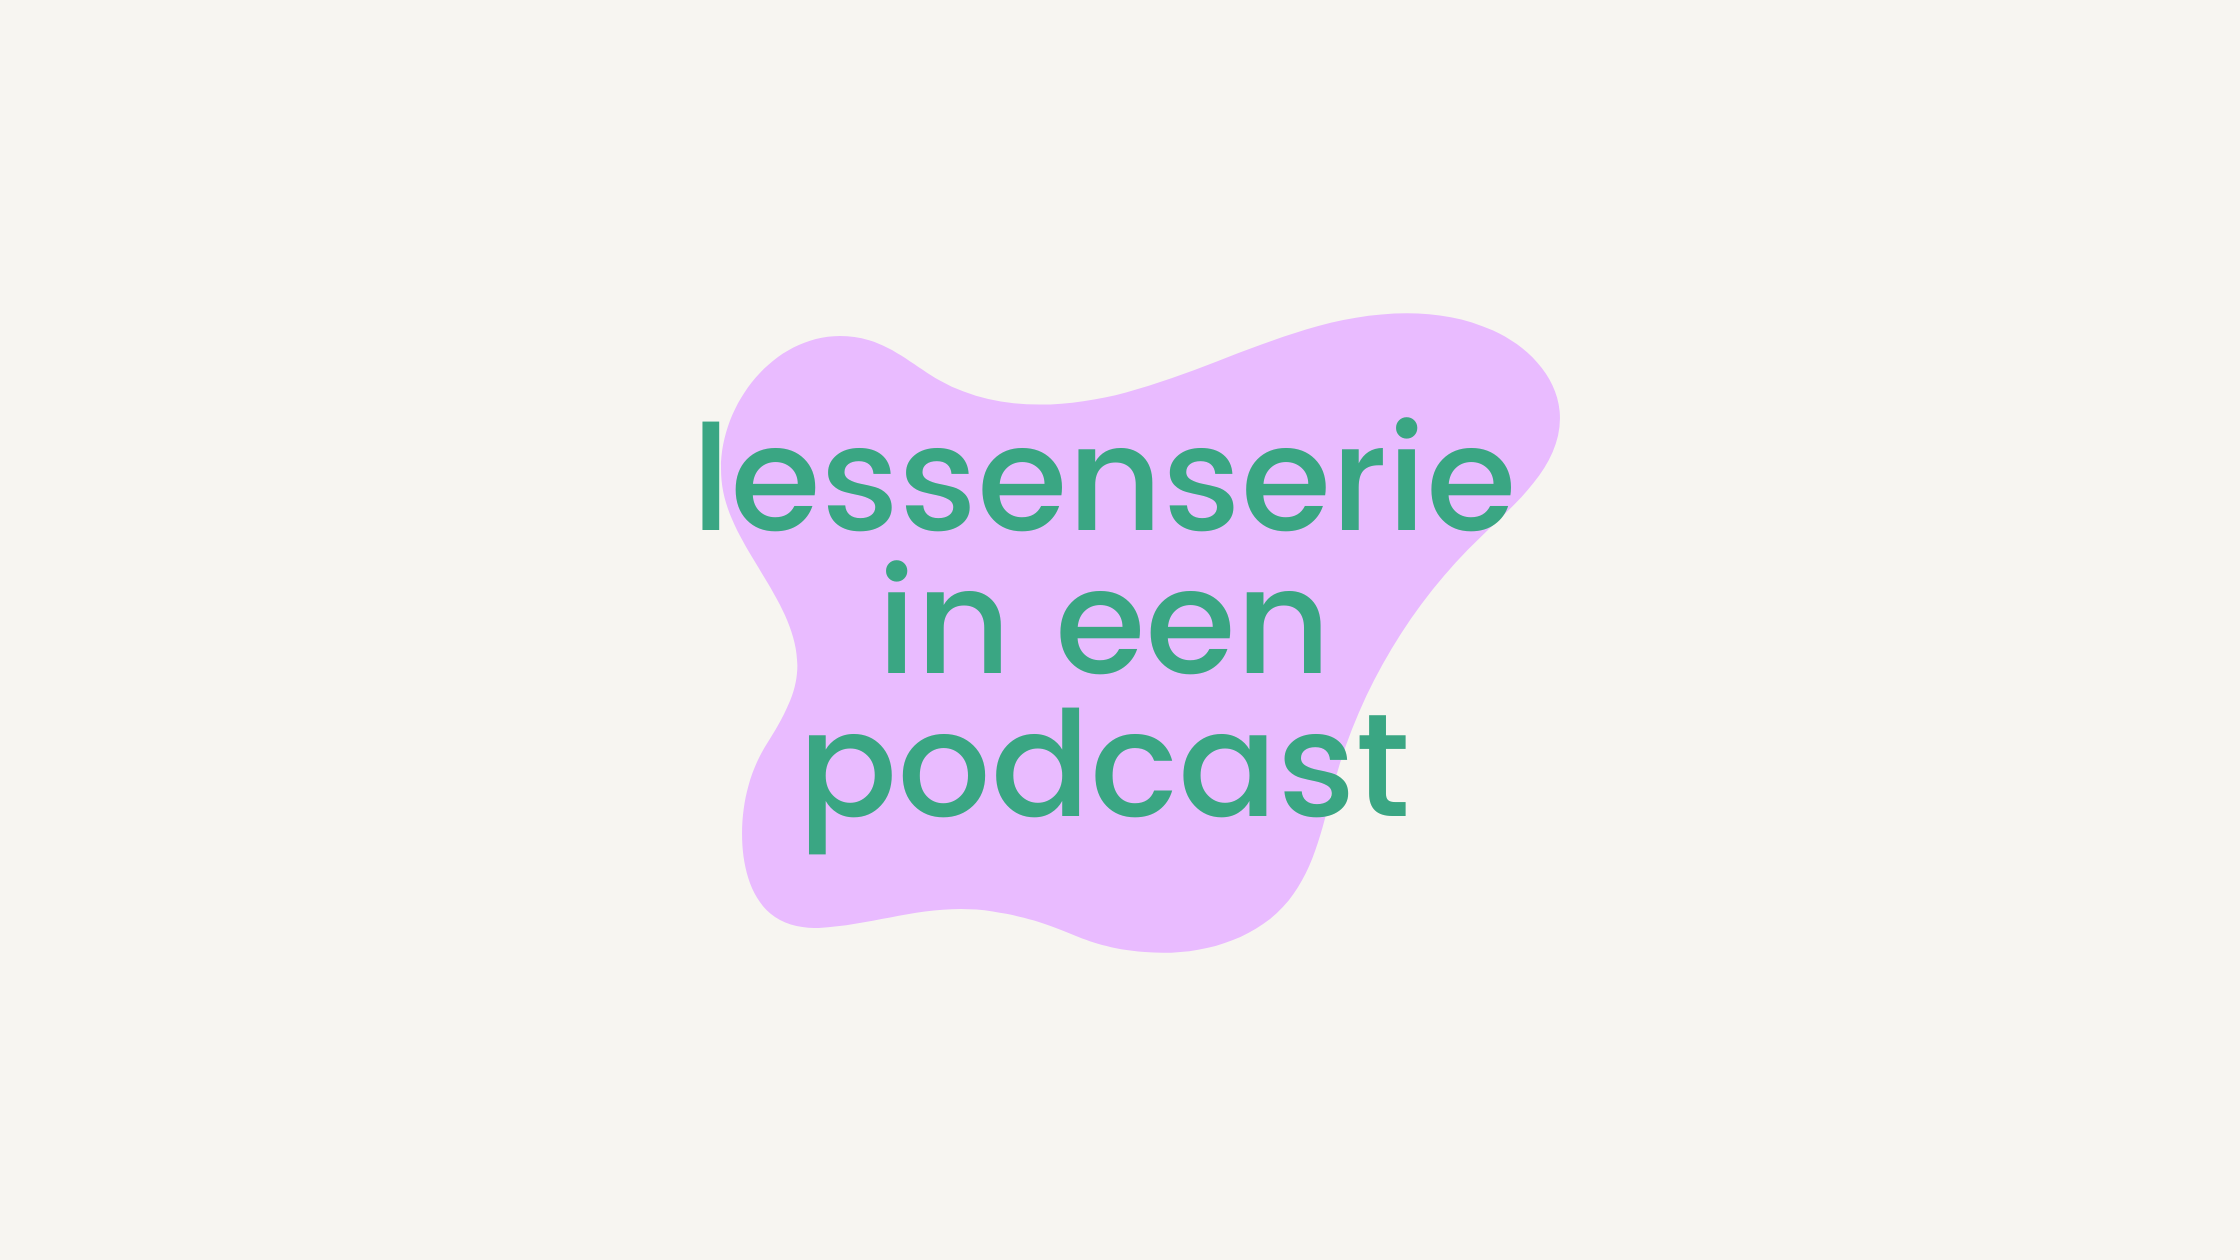 Lessenserie in een podcast